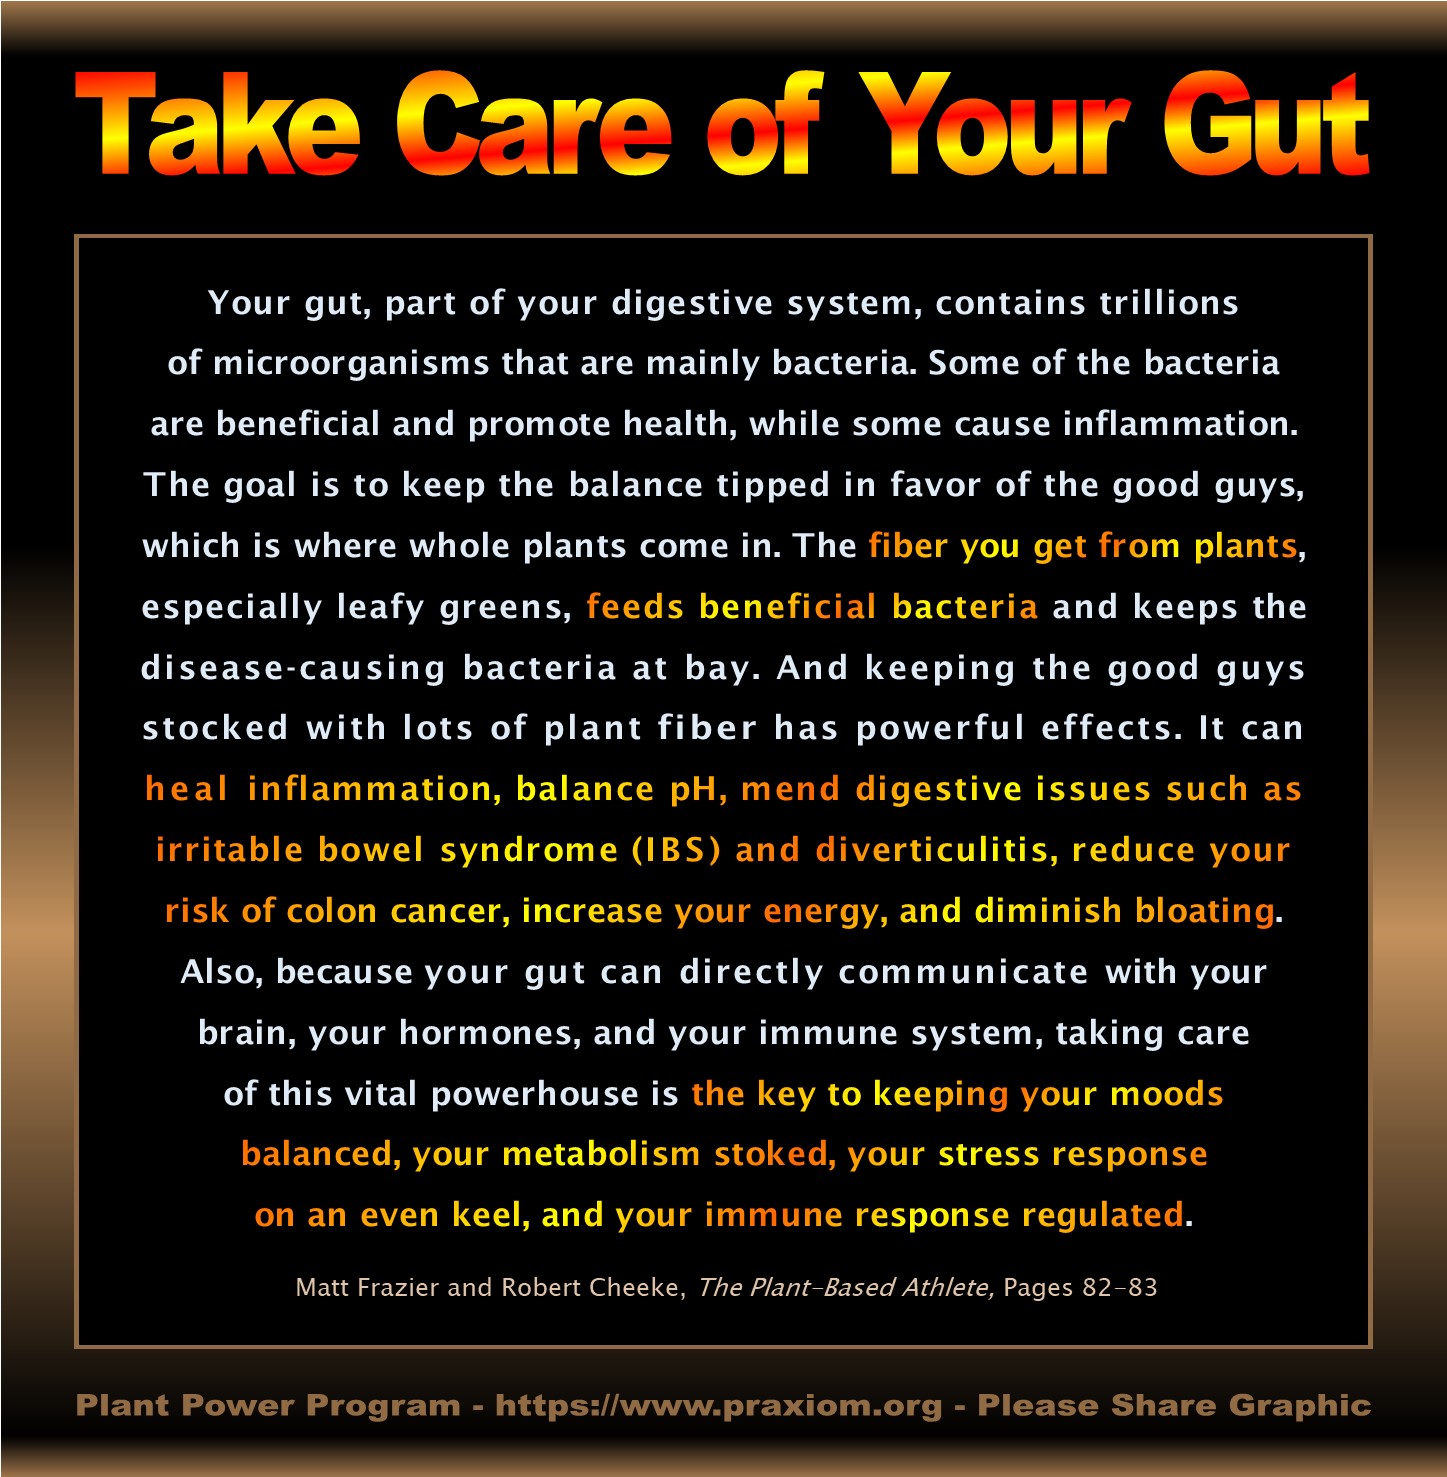 Take Care of Your Gut - Matt Frazier and Robert Cheeke